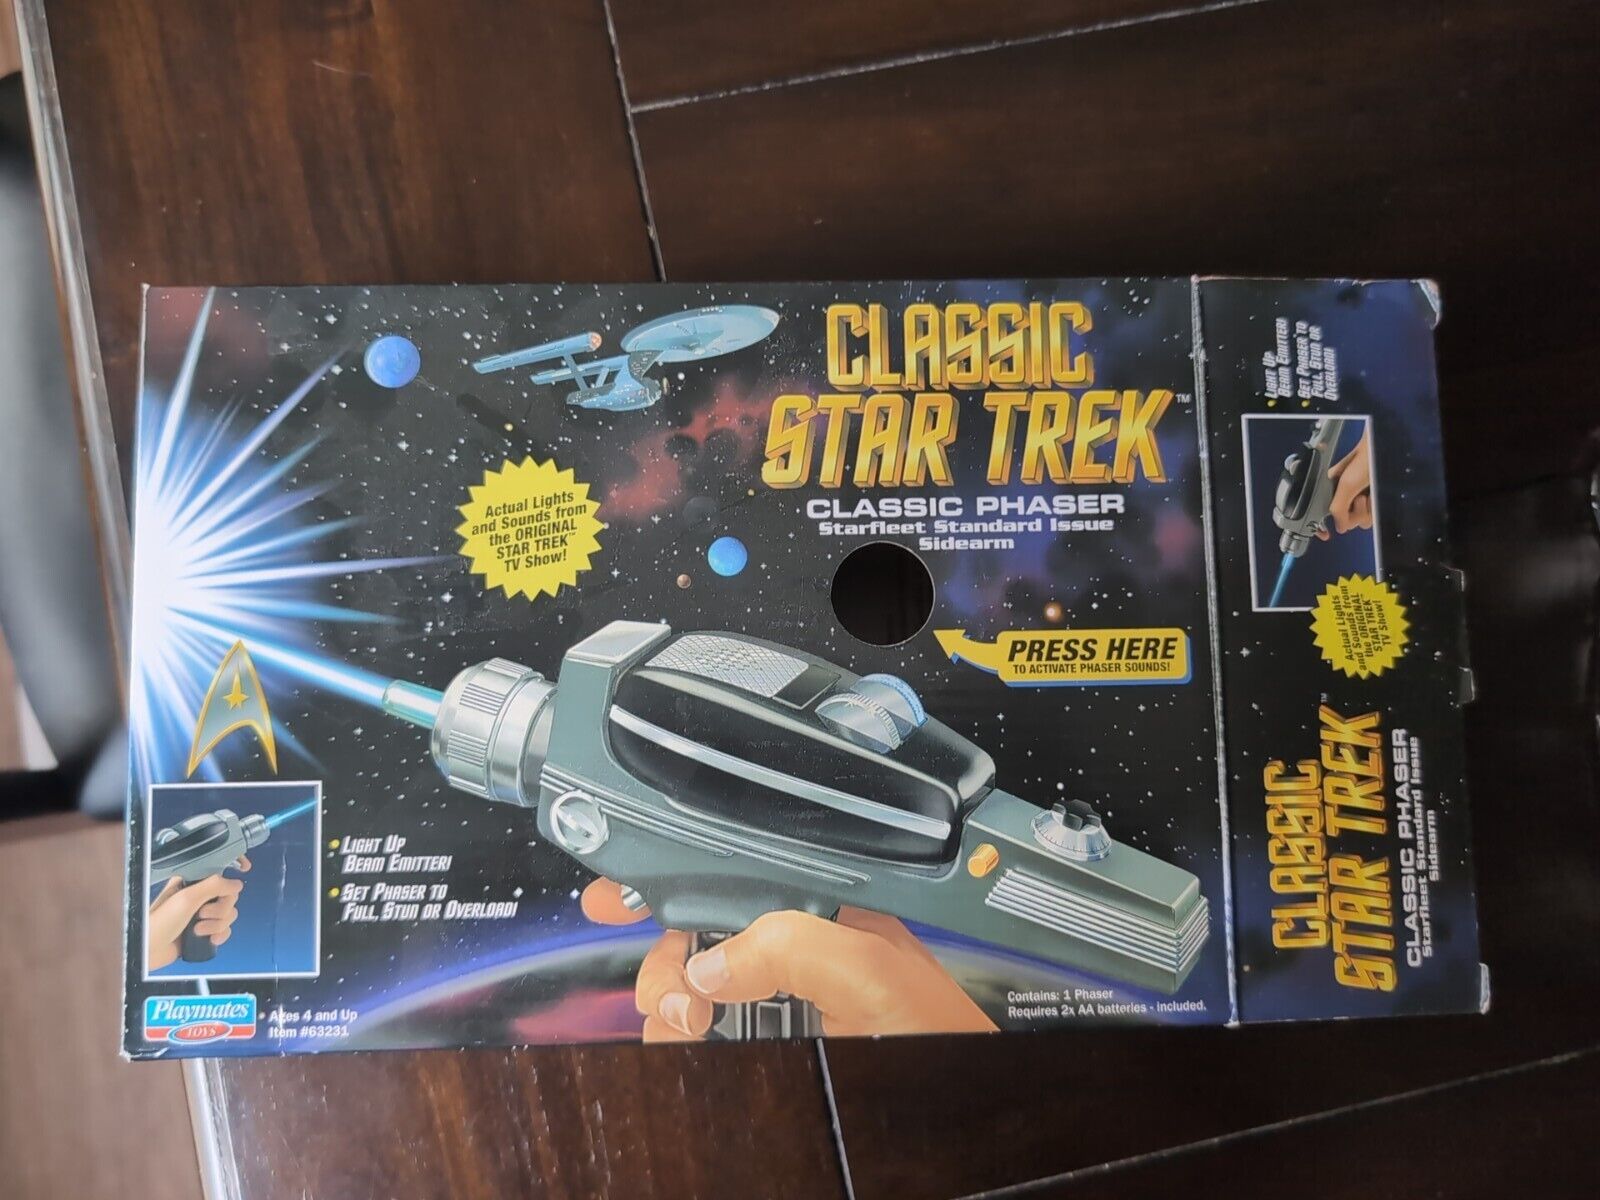 Playmates Classic Star Trek Classic Phaser Starfleet Standard Issue Sidearm NEW